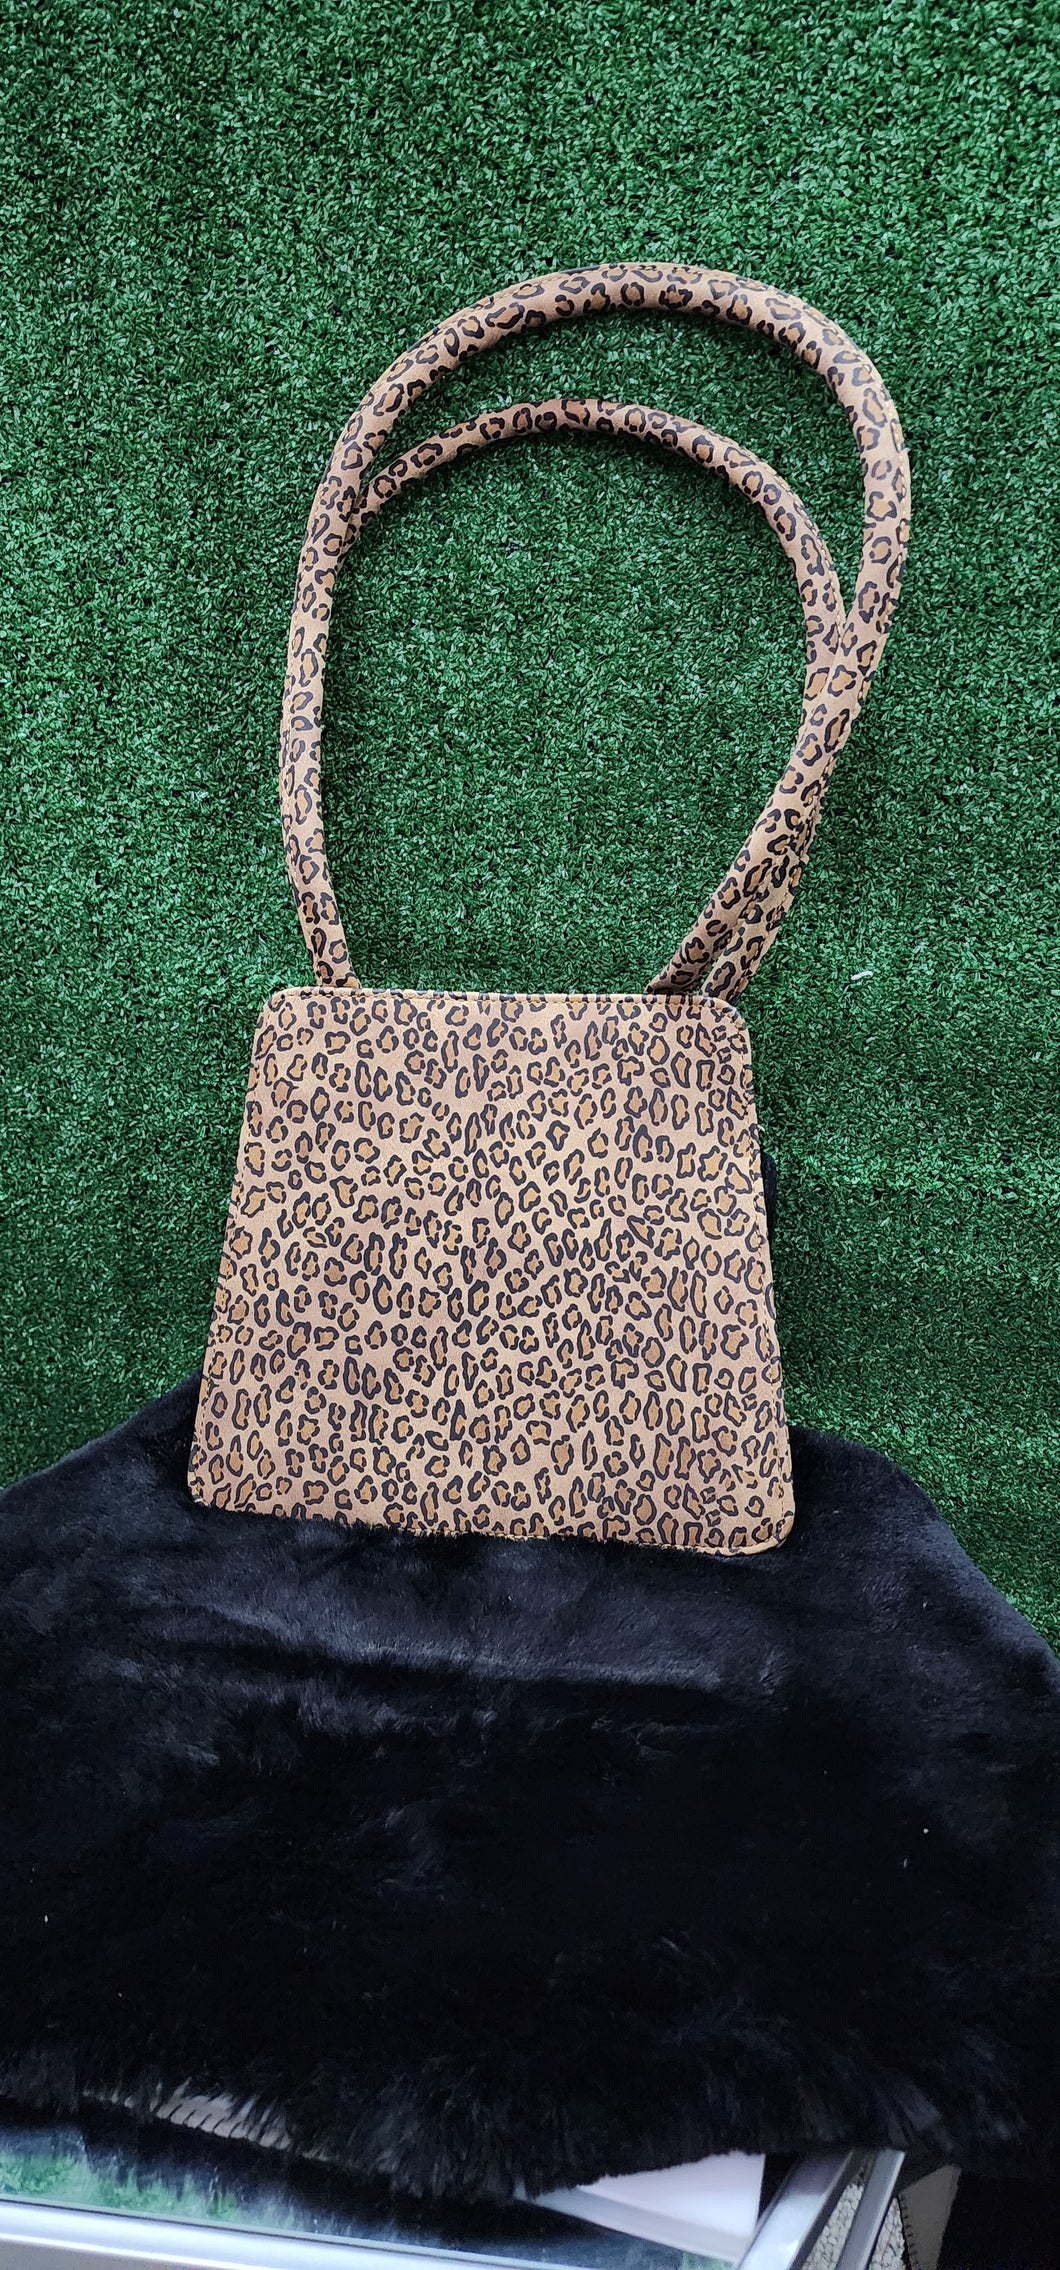 Leopard print handbag